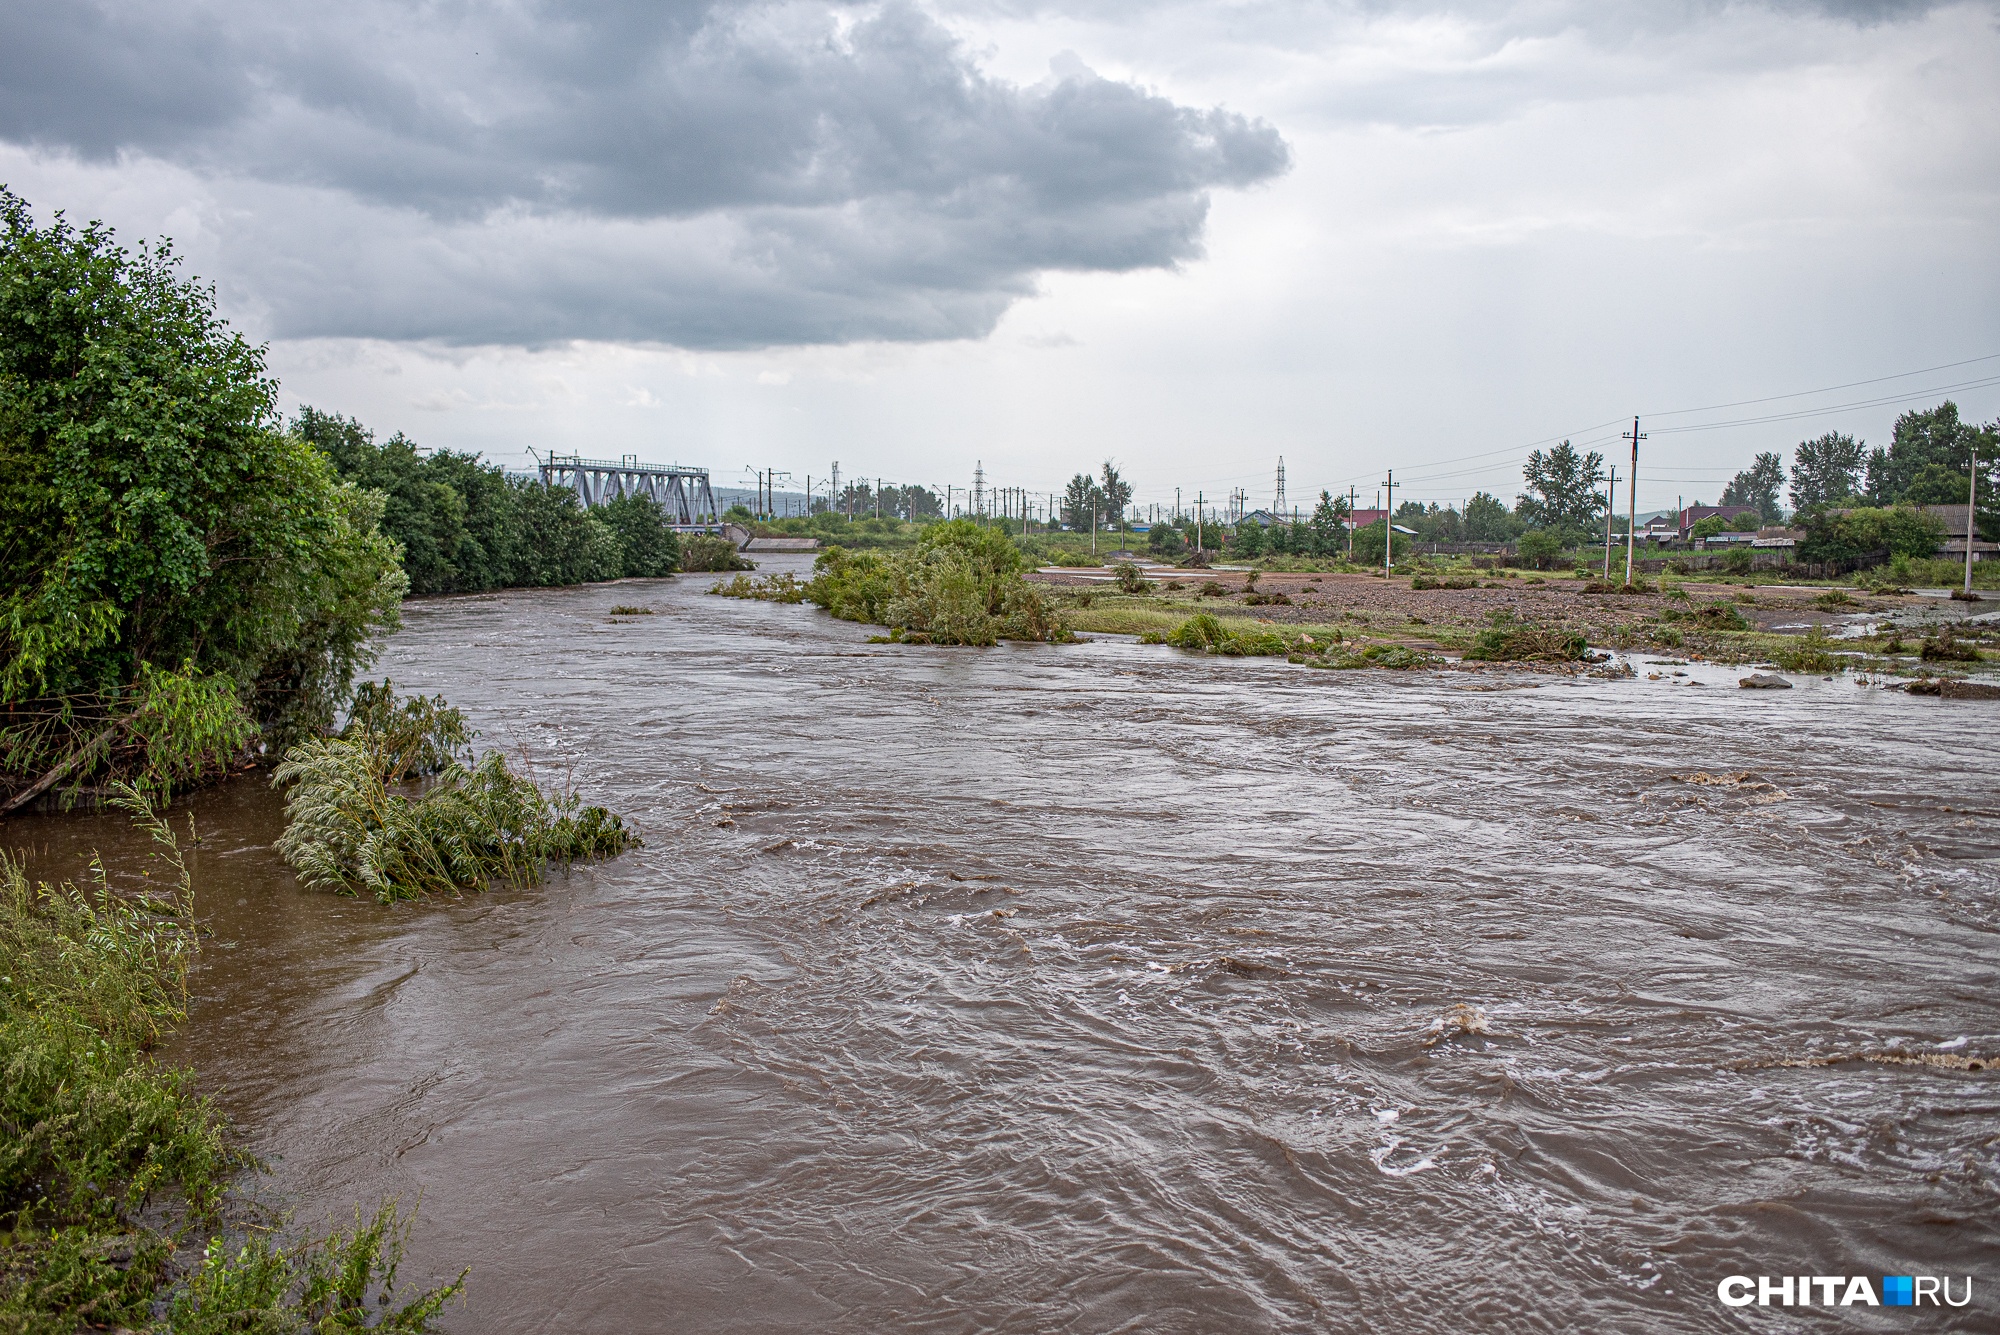 Подтопление дач ожидается 26 июля из-за подъема воды в реке Чите